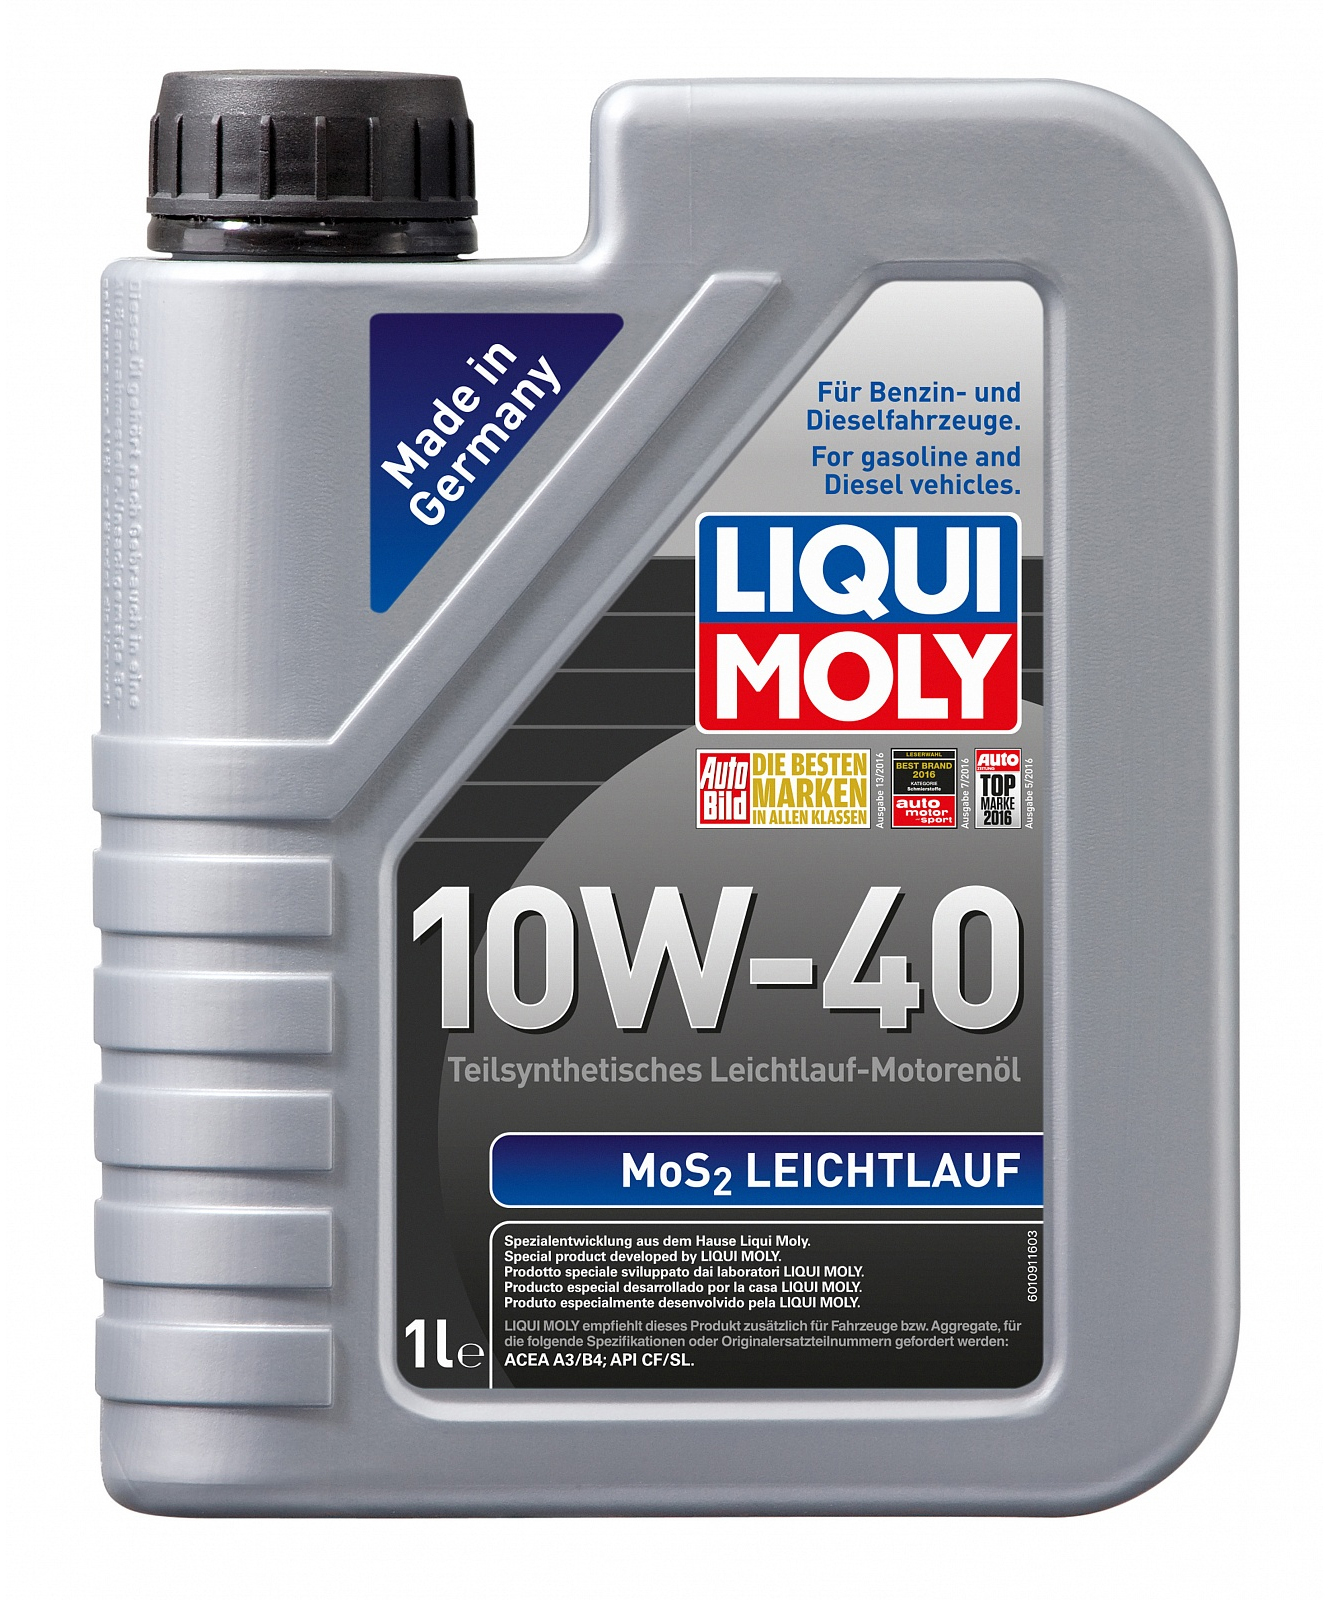 Купить моторное масло Liqui Moly MoS2 Leichtlauf 10W-40 1 л в Киеве